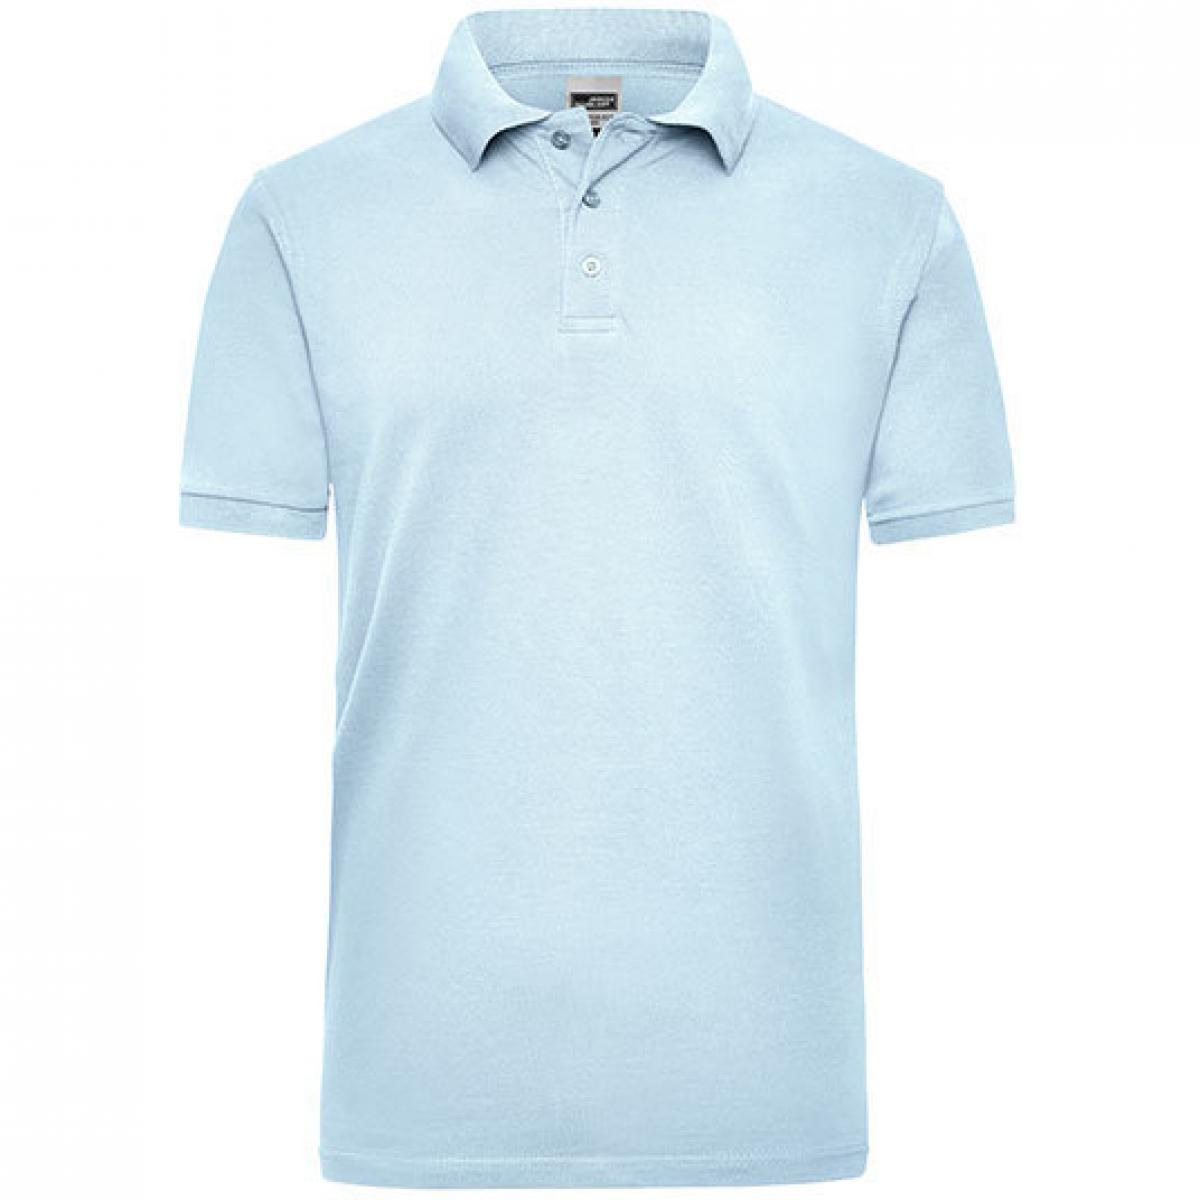 Hersteller: James+Nicholson Herstellernummer: JN 801 Artikelbezeichnung: Workwear Herren Poloshirt Men Farbe: Light Blue